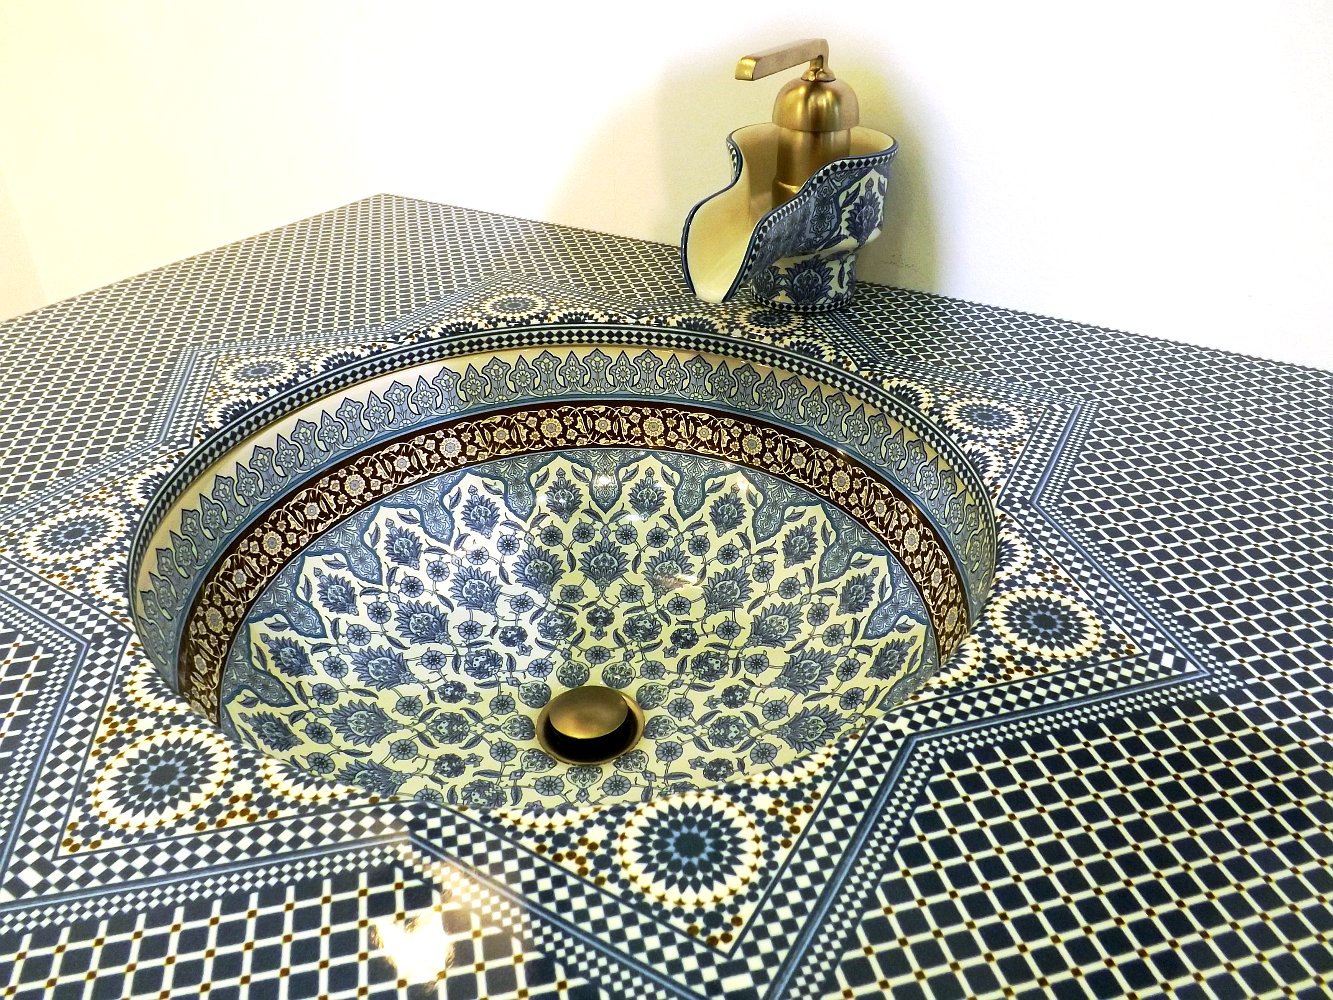 Фрагмент керамической раковины со столешницей и смесителем Marrakesh от Kohler на выставке МосБилд 2014